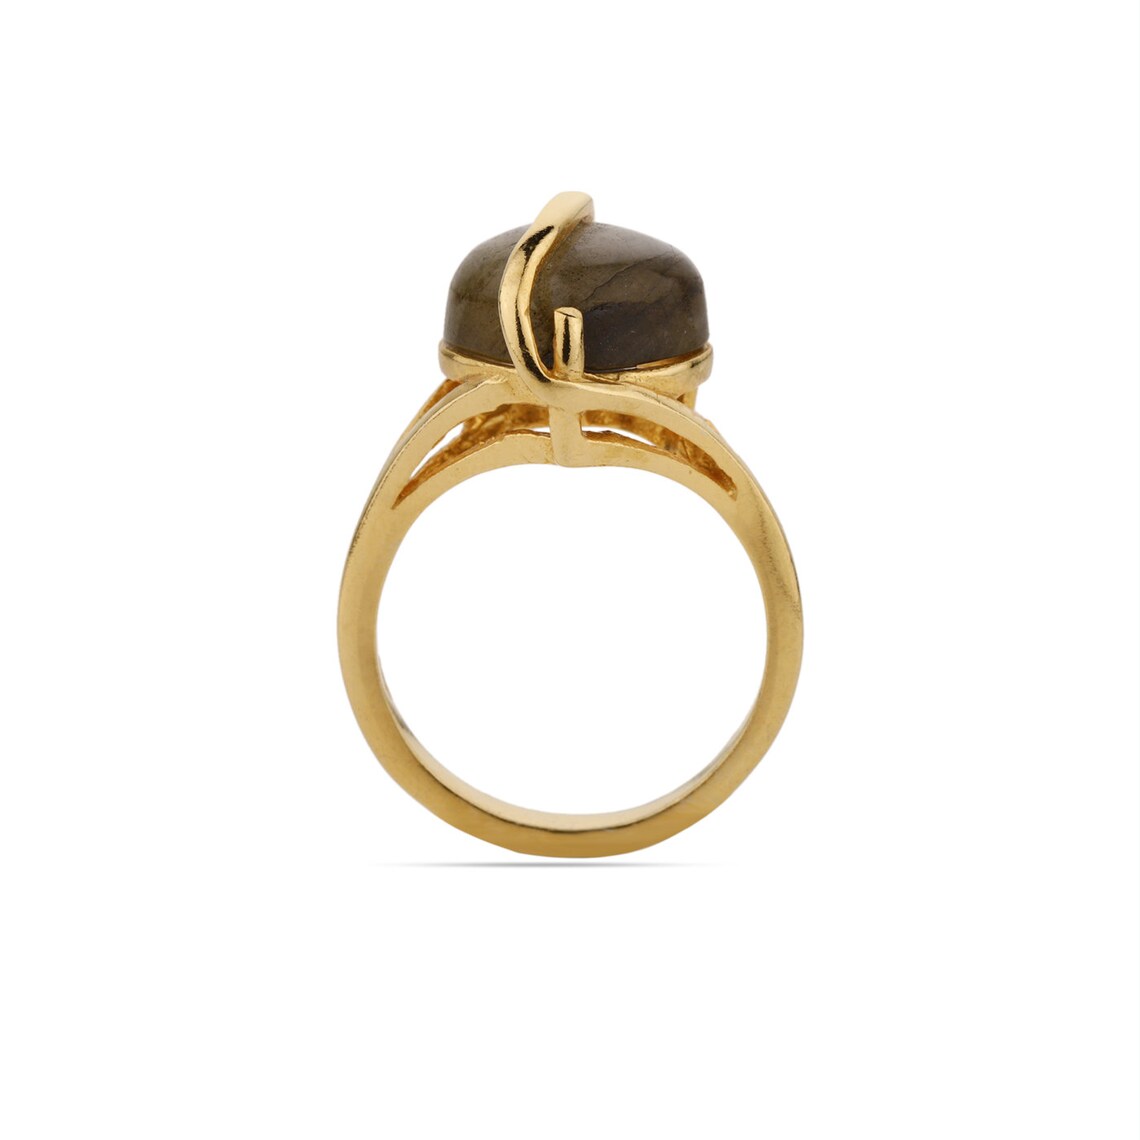 Heart Labradorite Ring, Gold Labradorite Ring, Labradorite Gemstone Ring, Solitaire Ring, Labradorite Prong set Ring, Handmade Ring